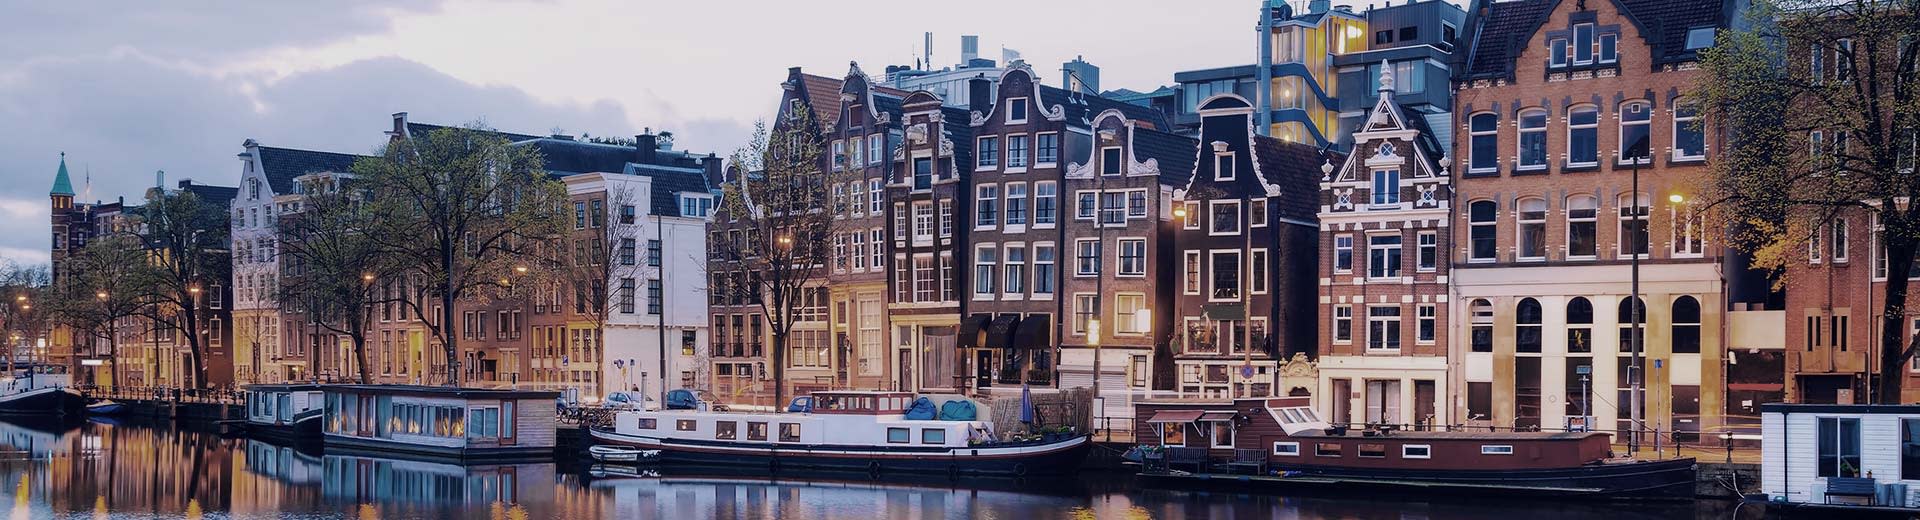 Las casas flotantes estacionaron junto al canal con una franja de las casas de estilo holandés detrás de él.